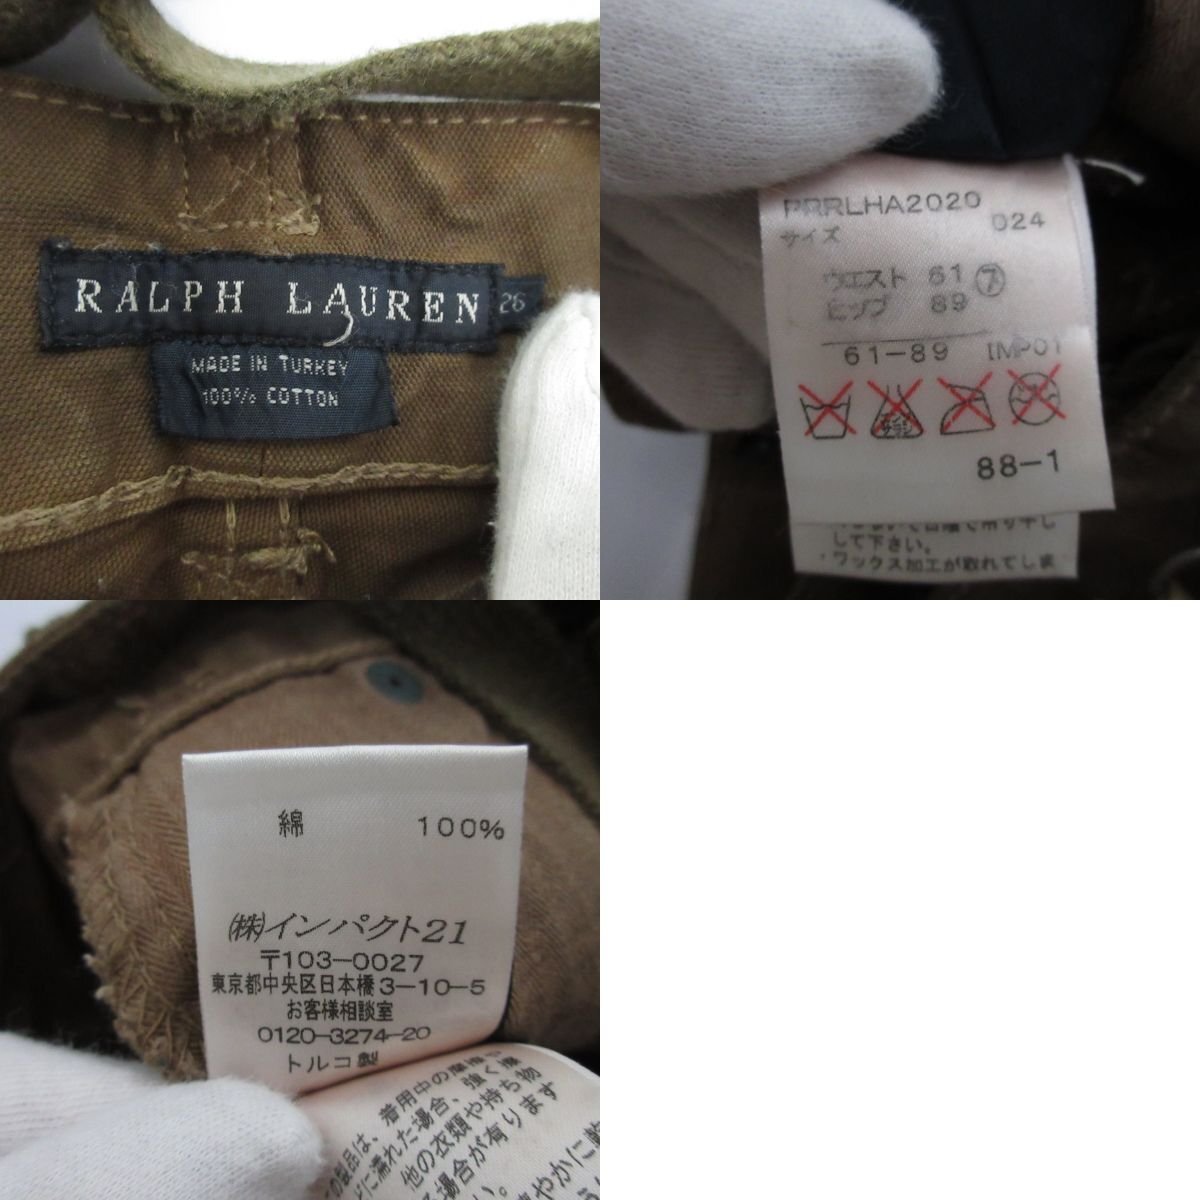  прекрасный товар RALPH LAUREN Ralph Lauren Vintage обработка лоскутное шитье ремень имеется обтягивающий брюки размер 26 оттенок коричневого 